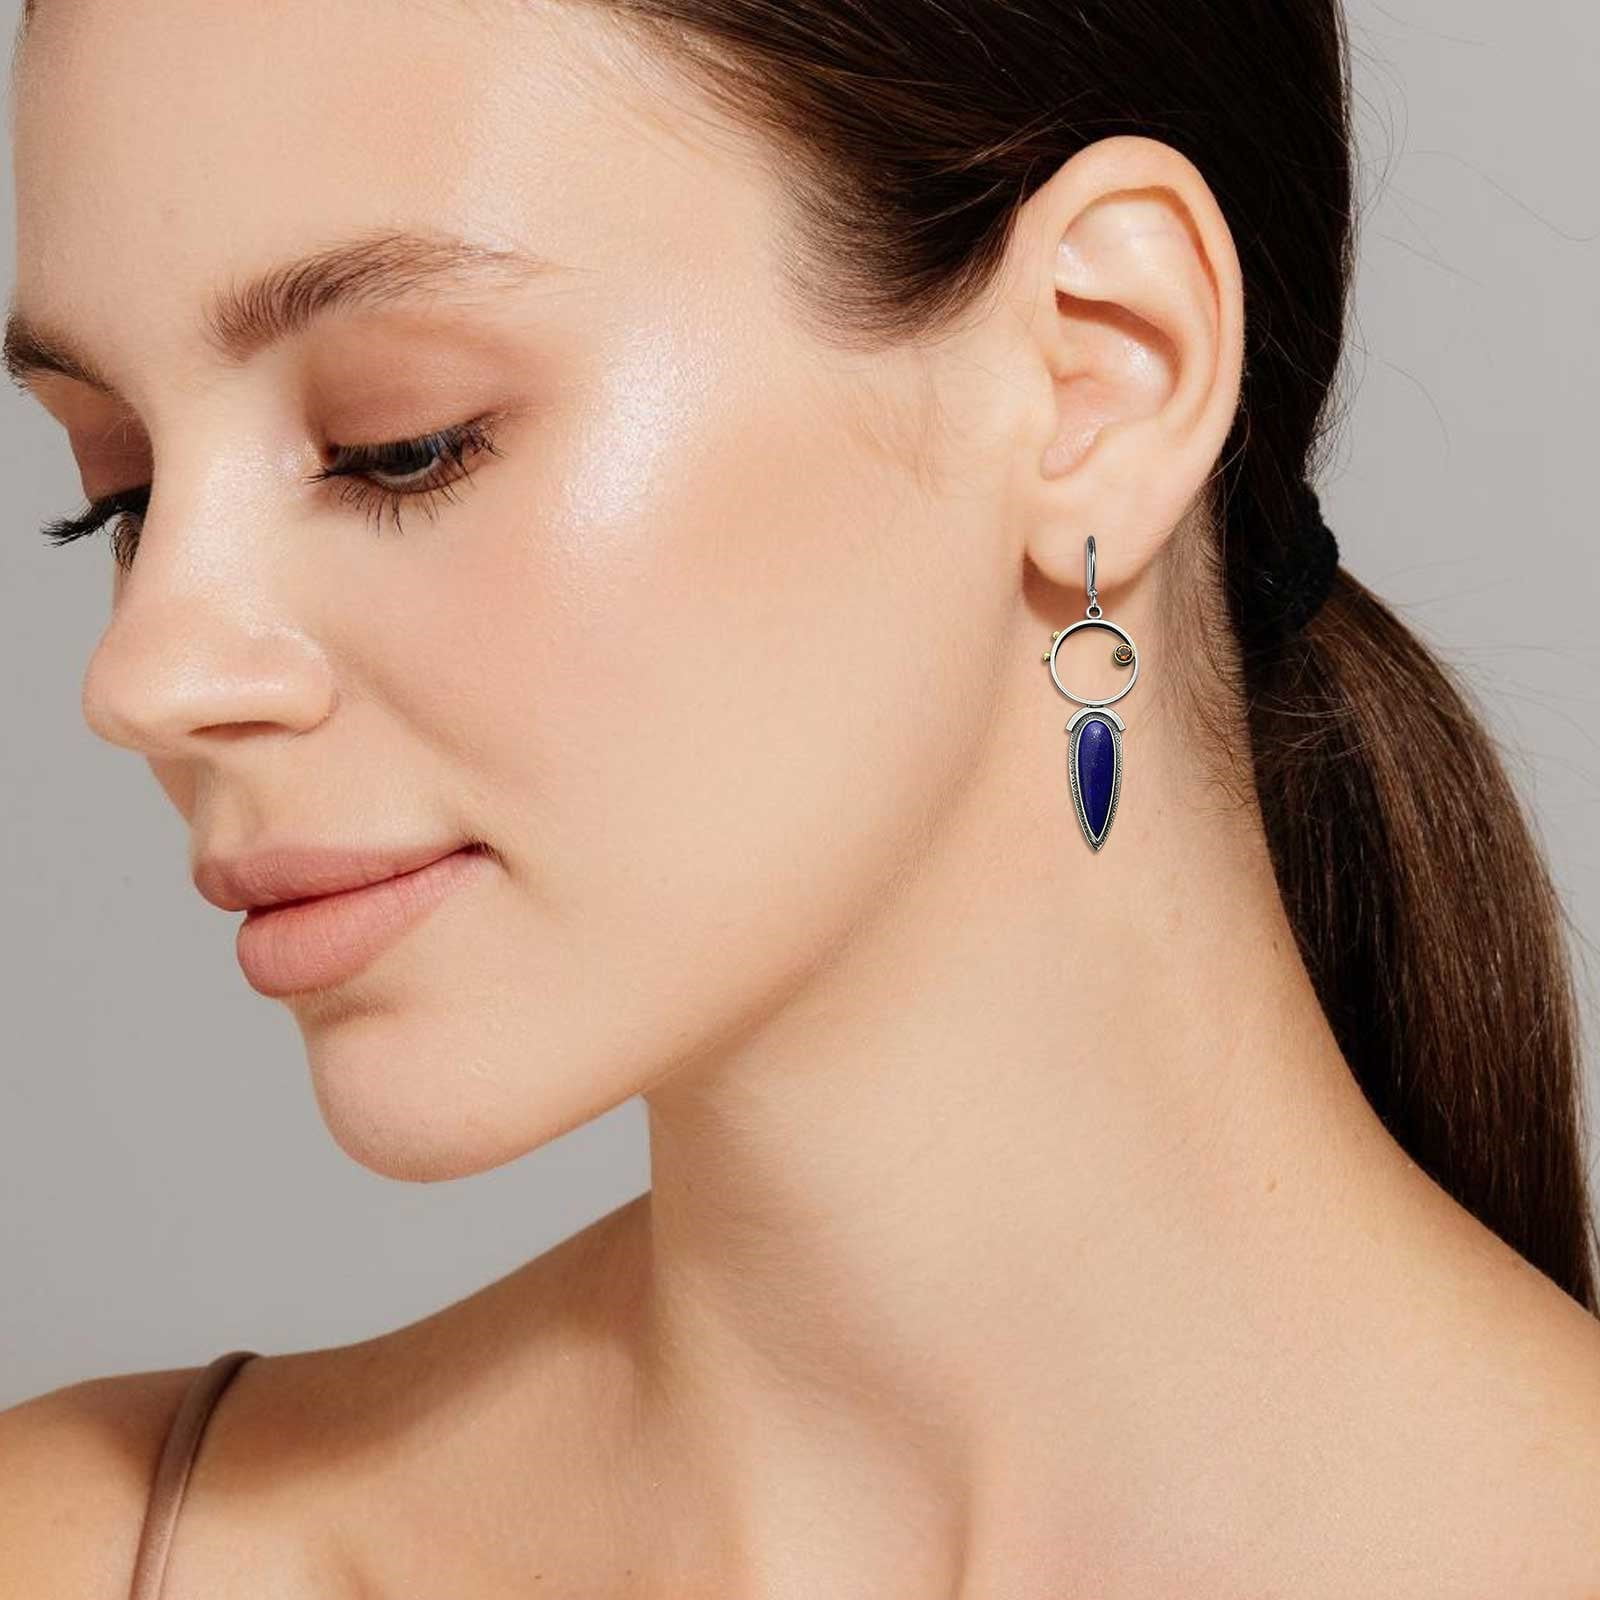 Wholesale Men's Earrings Supplier Online - Nihaojewelry